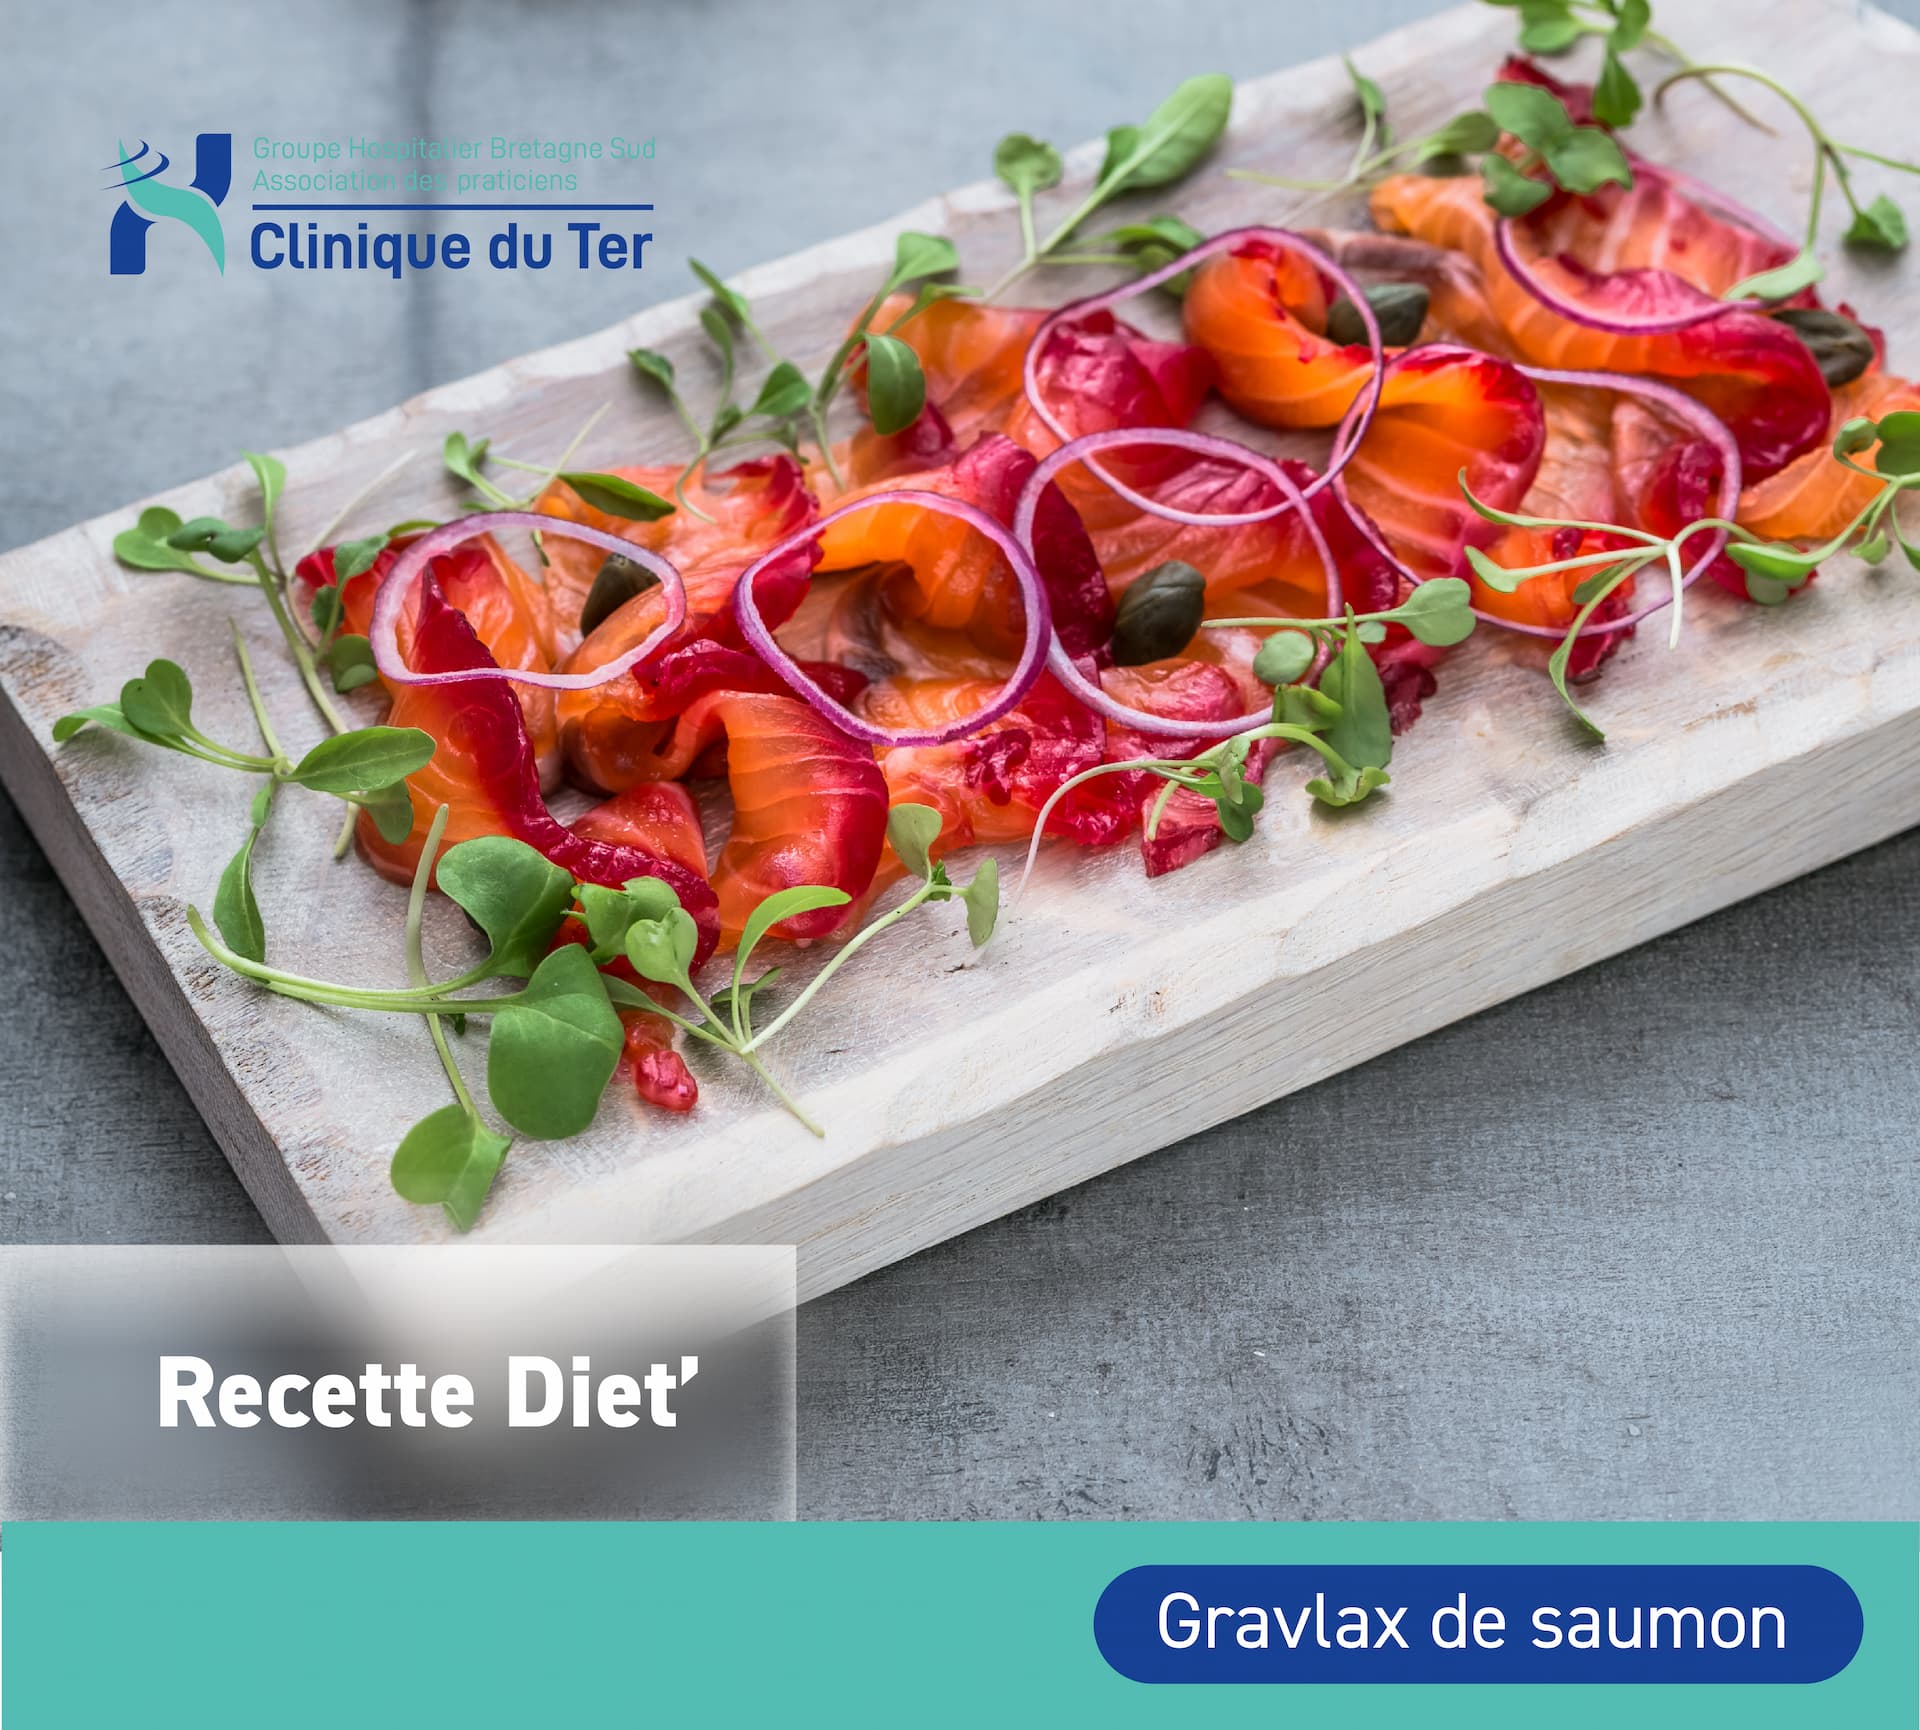 Recette diététique : Gravlax de saumon